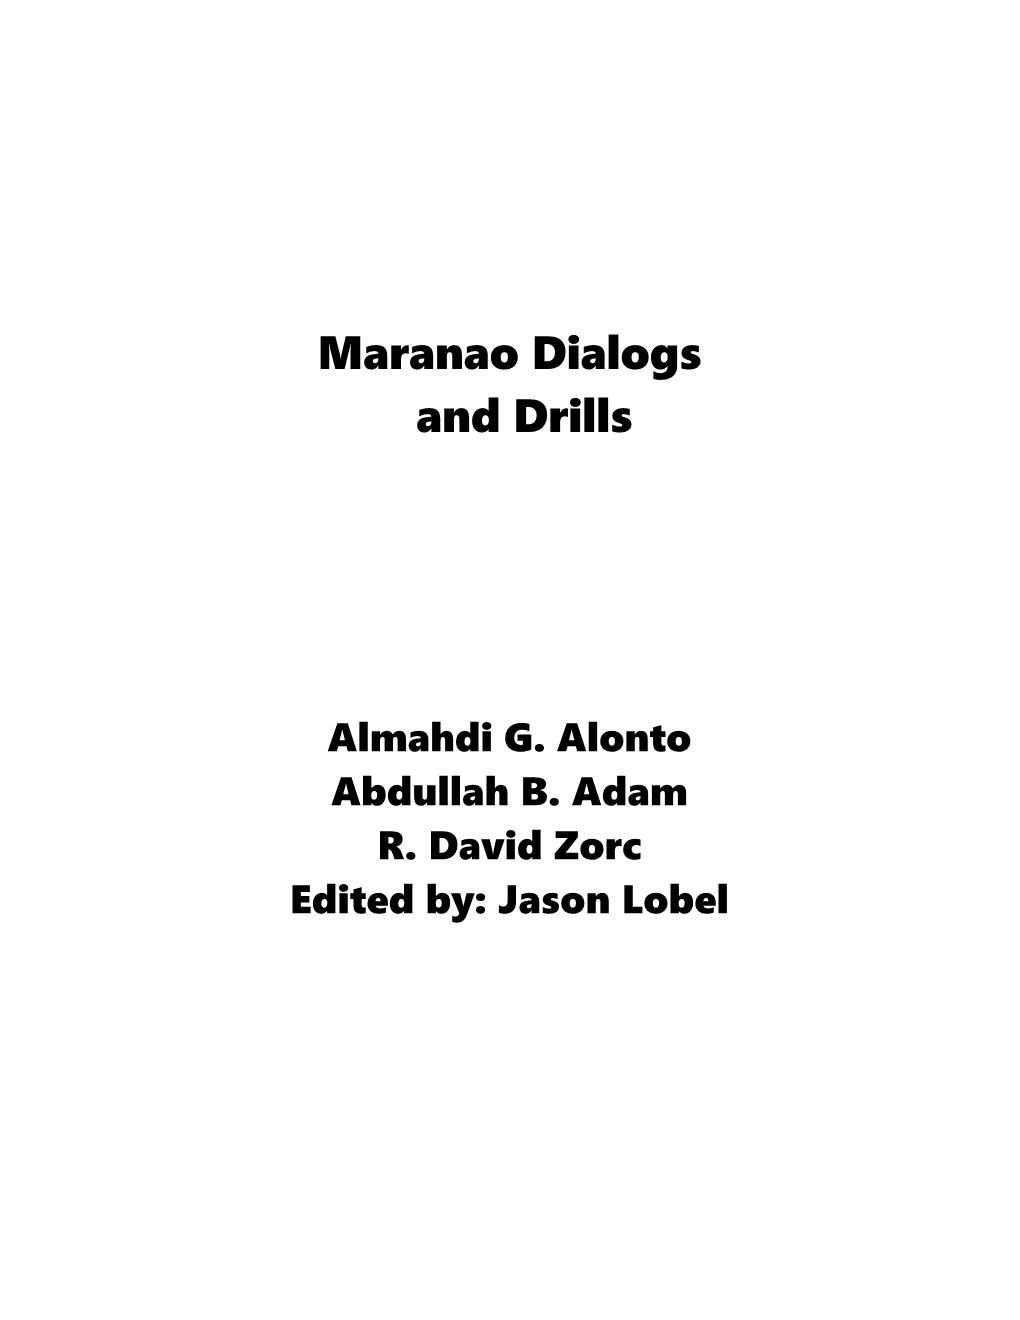 Maranao Dialogs and Drills